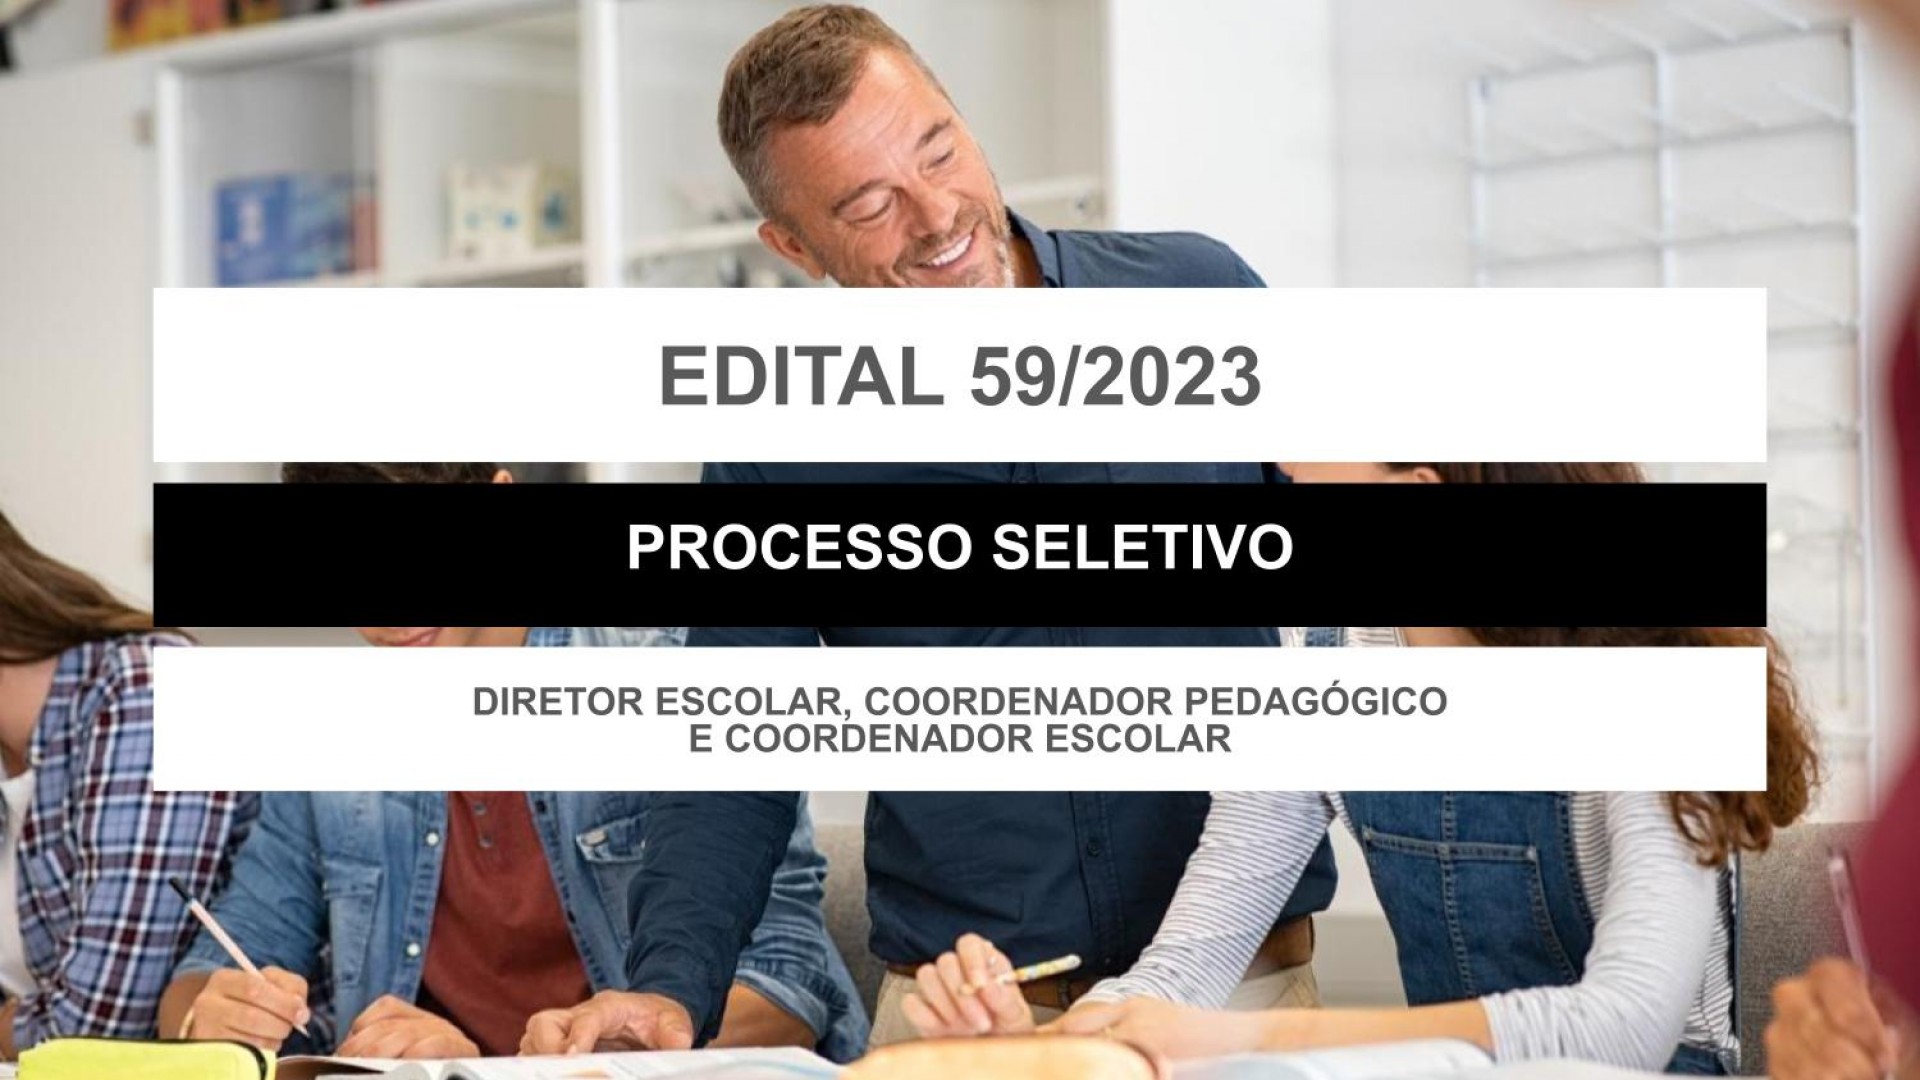 EDITAL EDUCAÇÃO Nº 059/2023 - DIRETOR ESCOLAR, COORDENADOR PEDAGÓGICO E COORDENADOR ESCOLAR